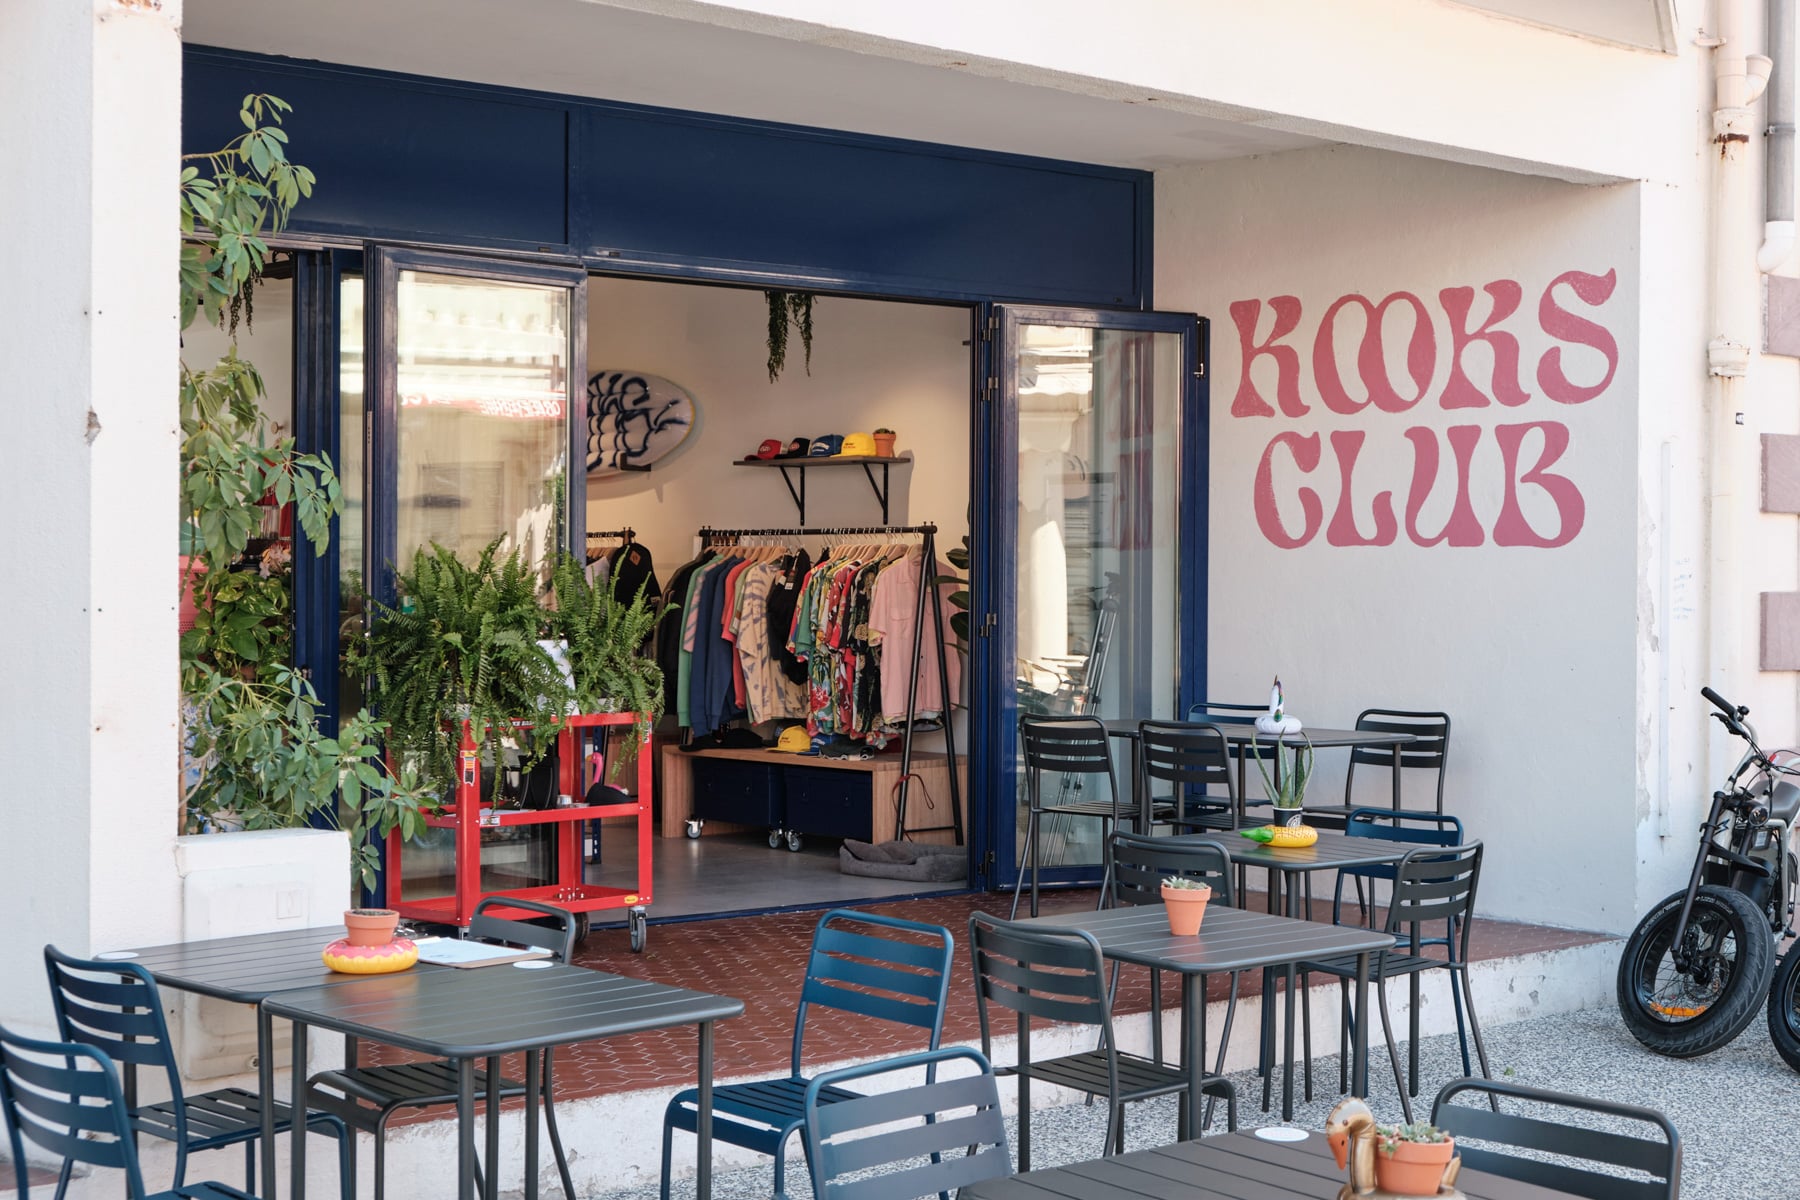 Kooks Club : nouveau concept store et coffee shop à Hendaye